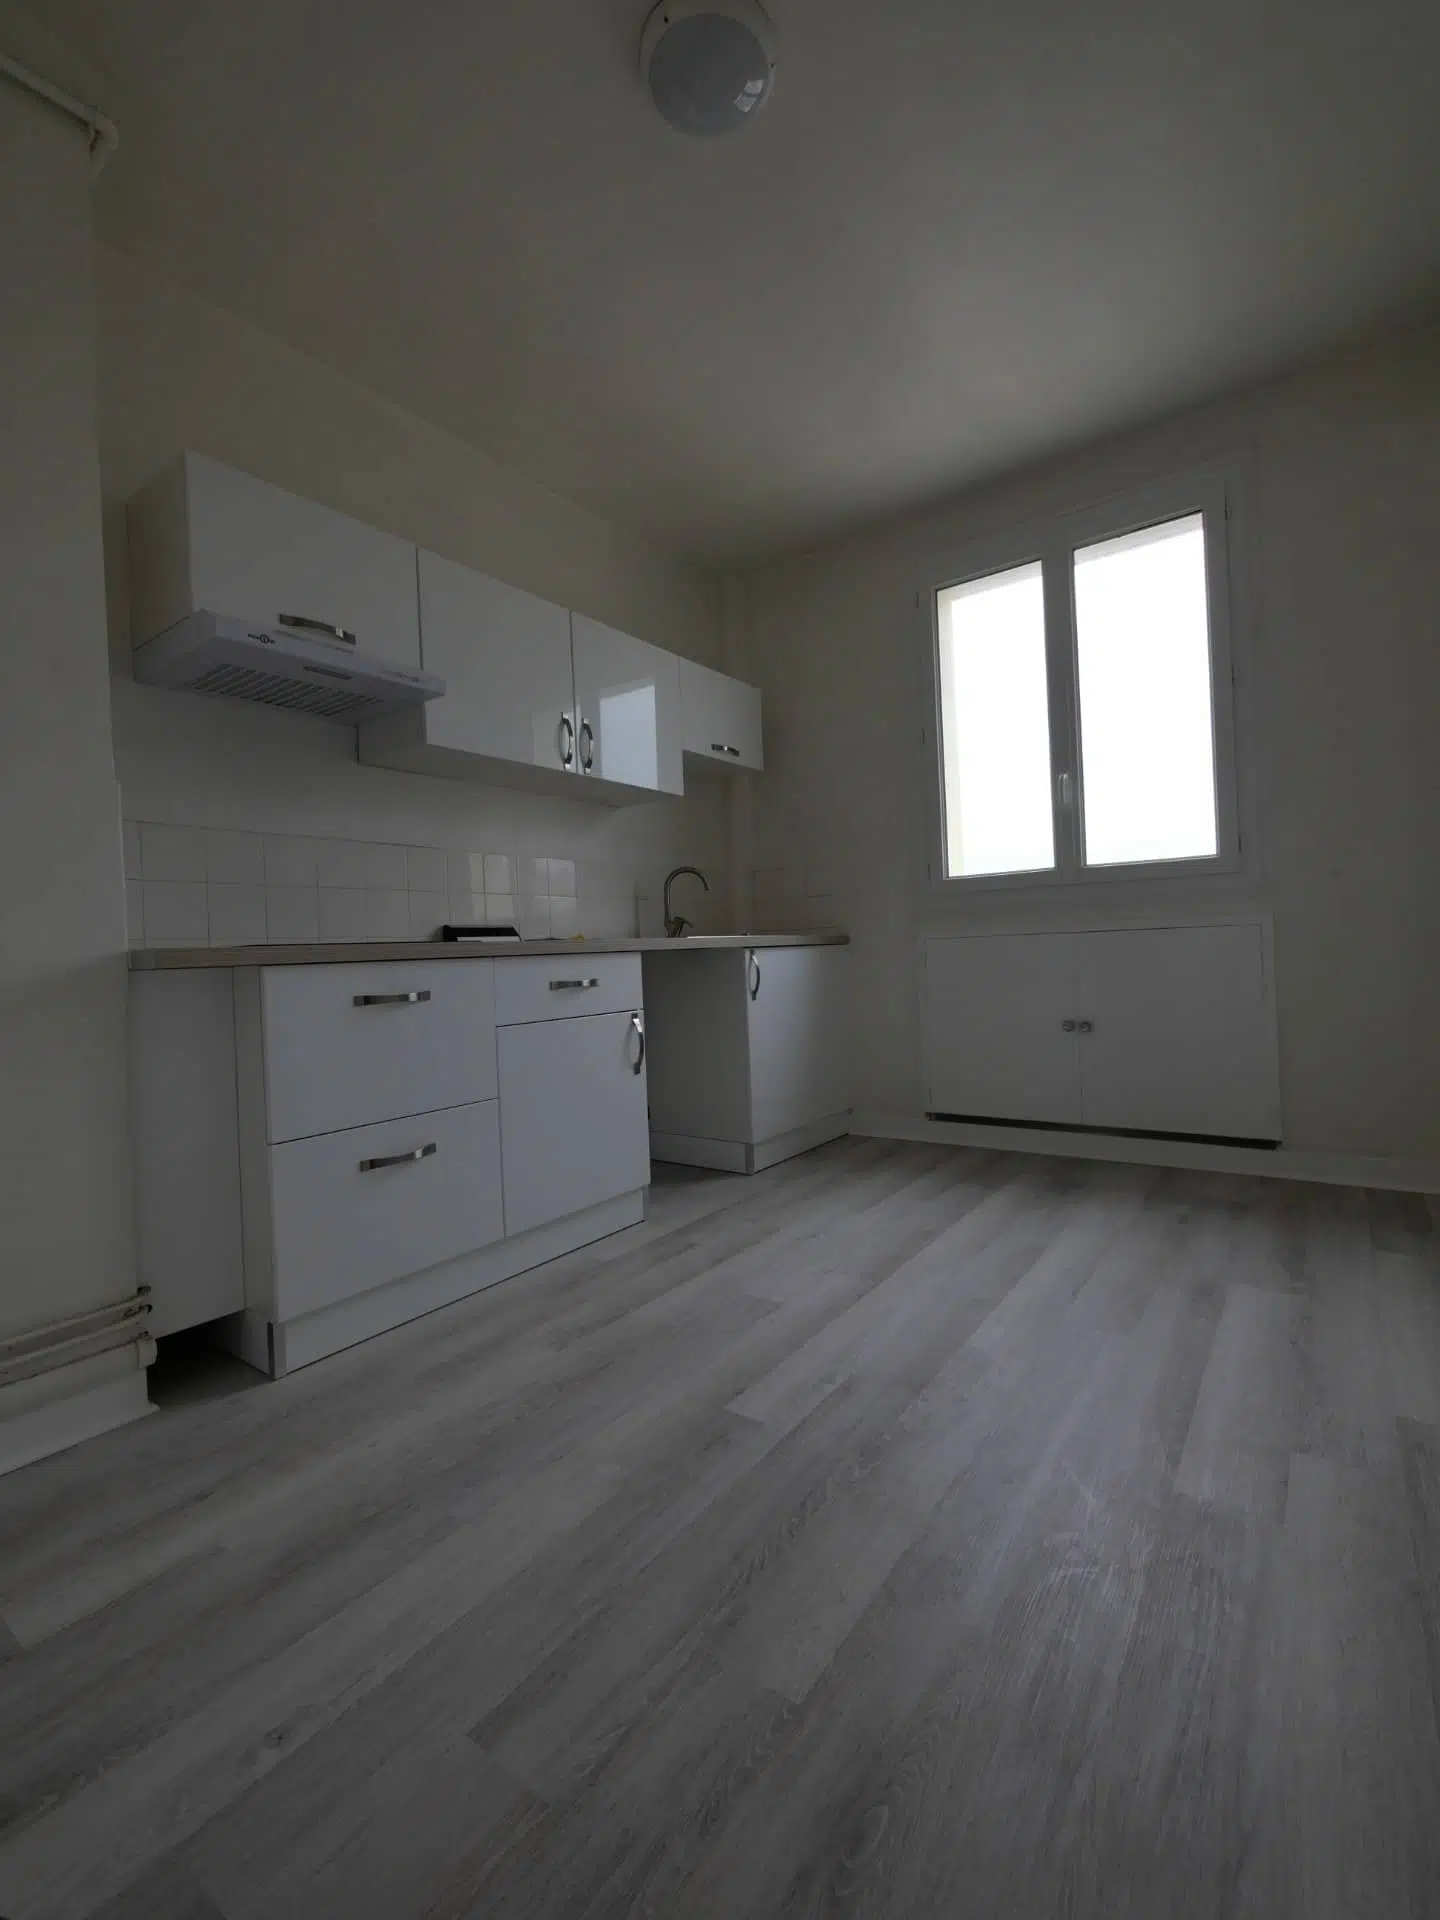 Annonce immobilière à louer Appartement type F3 Le Havre 3029